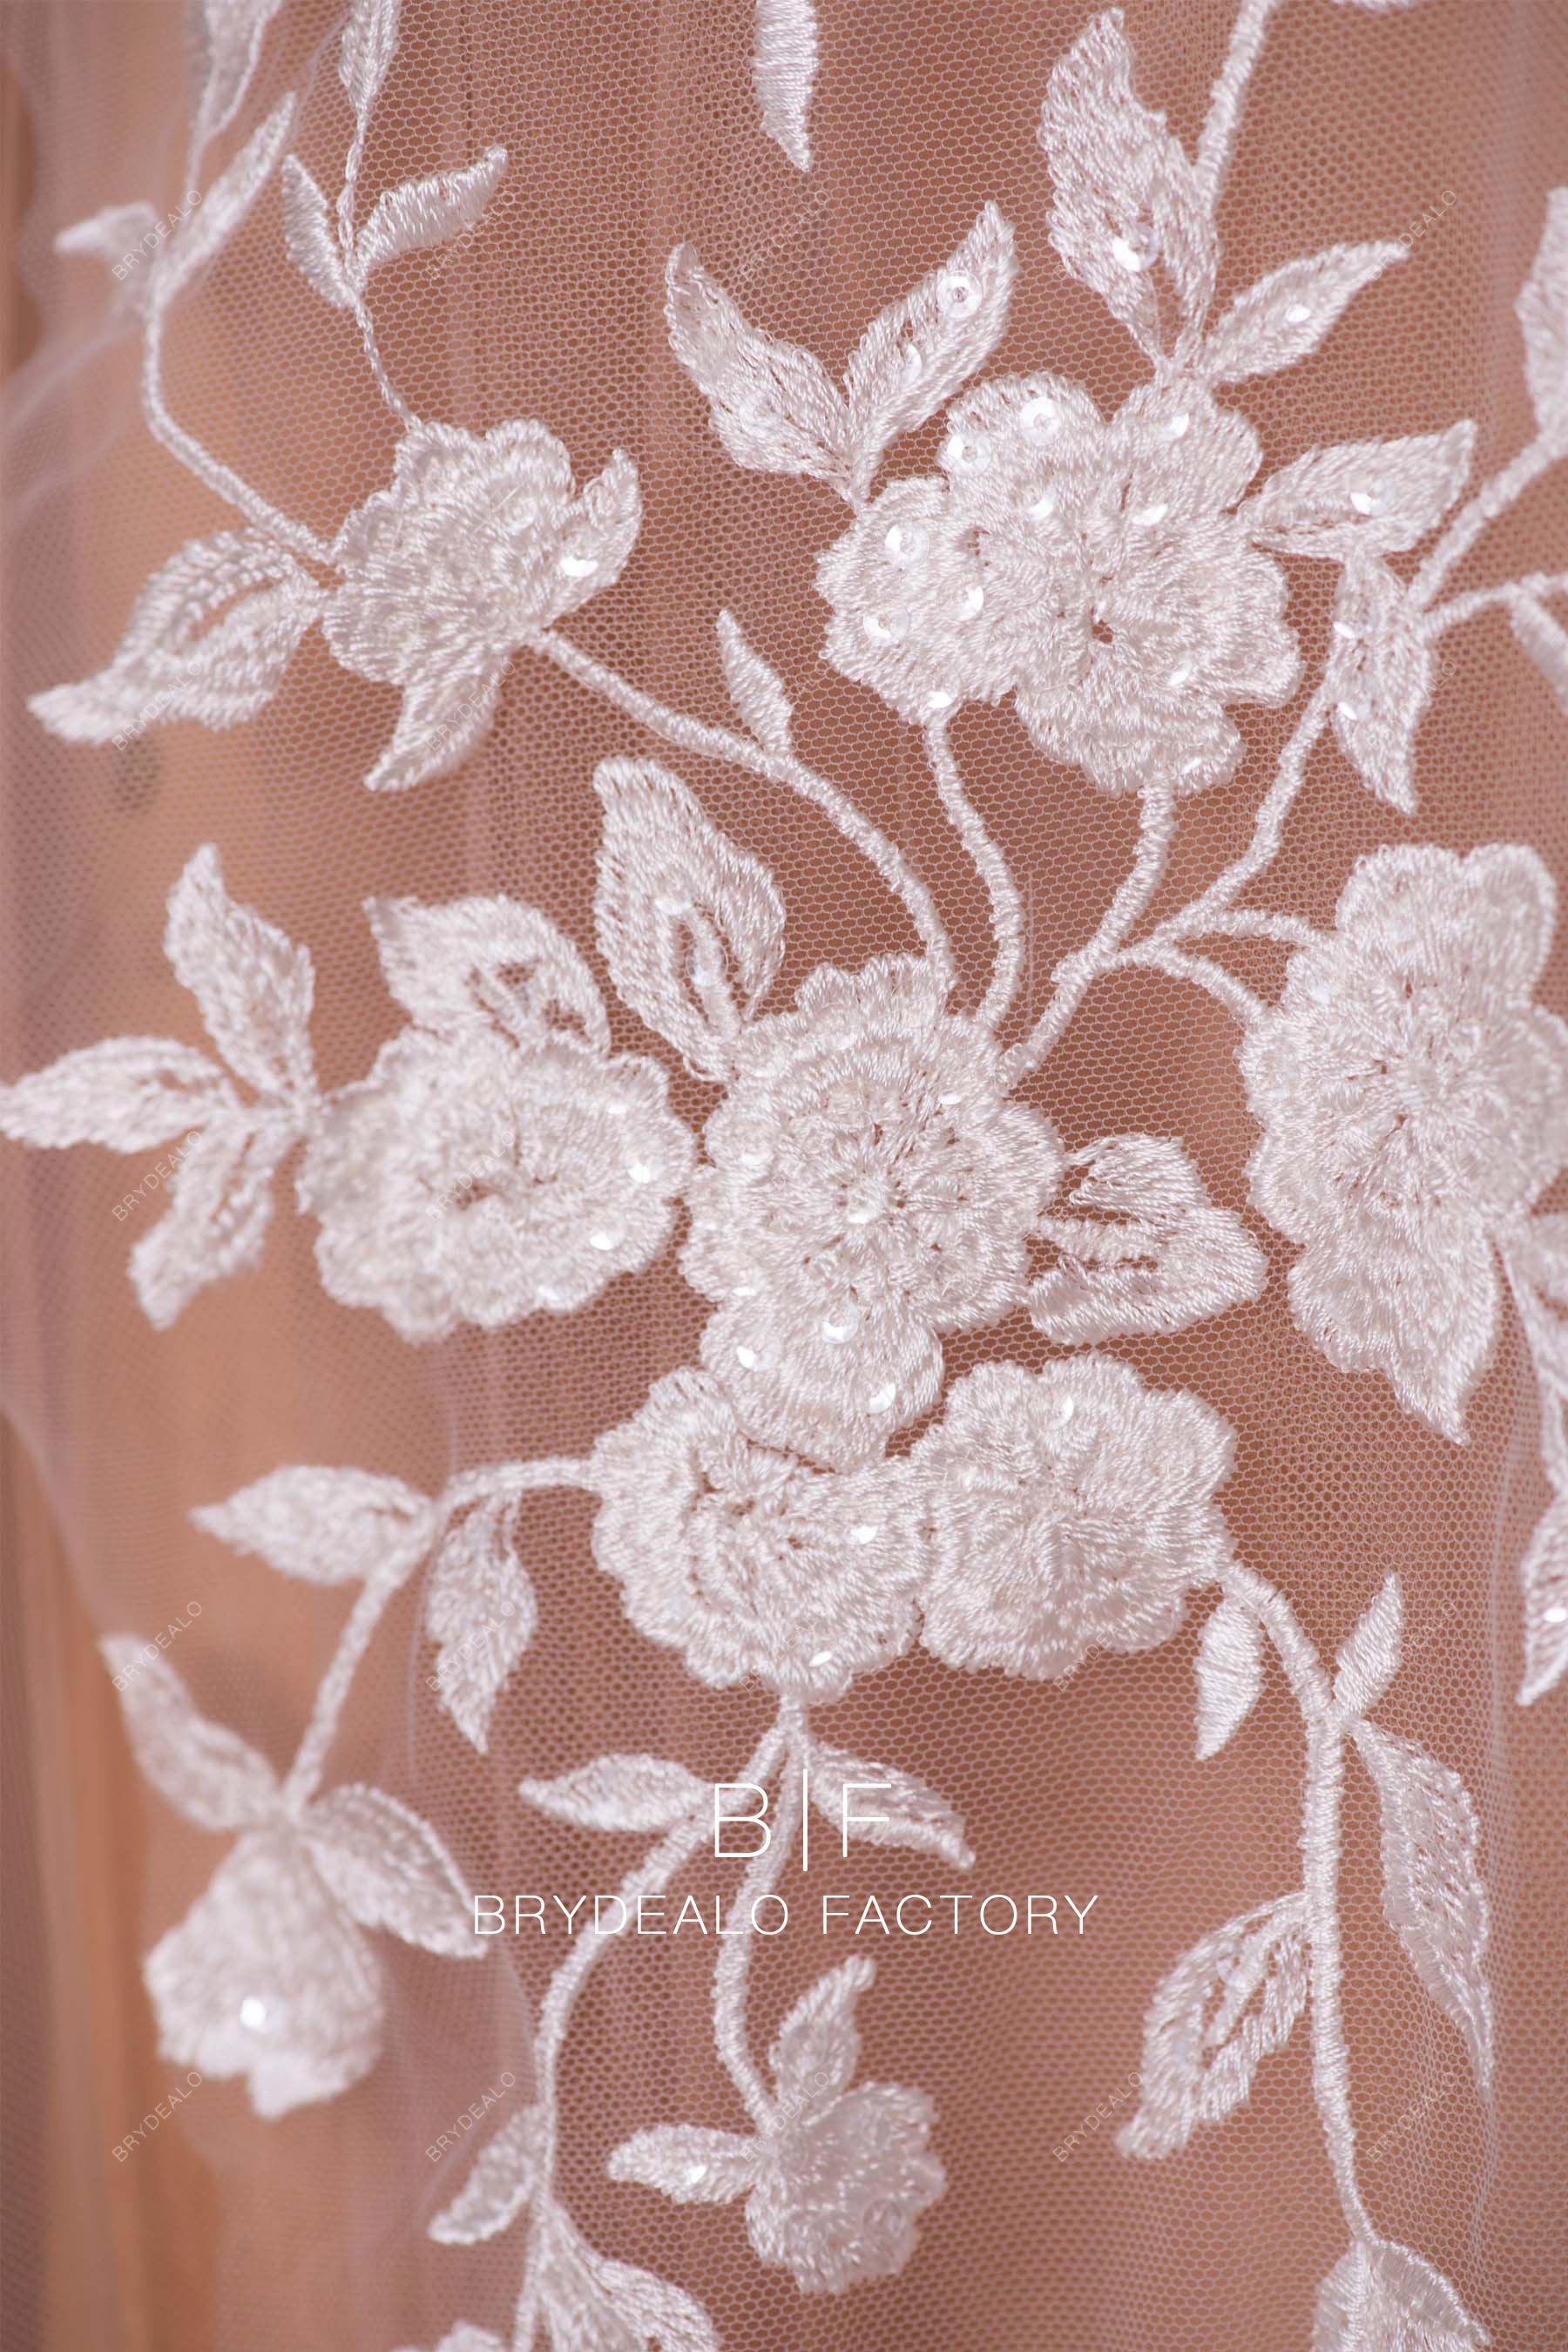 shimmery daisy lace